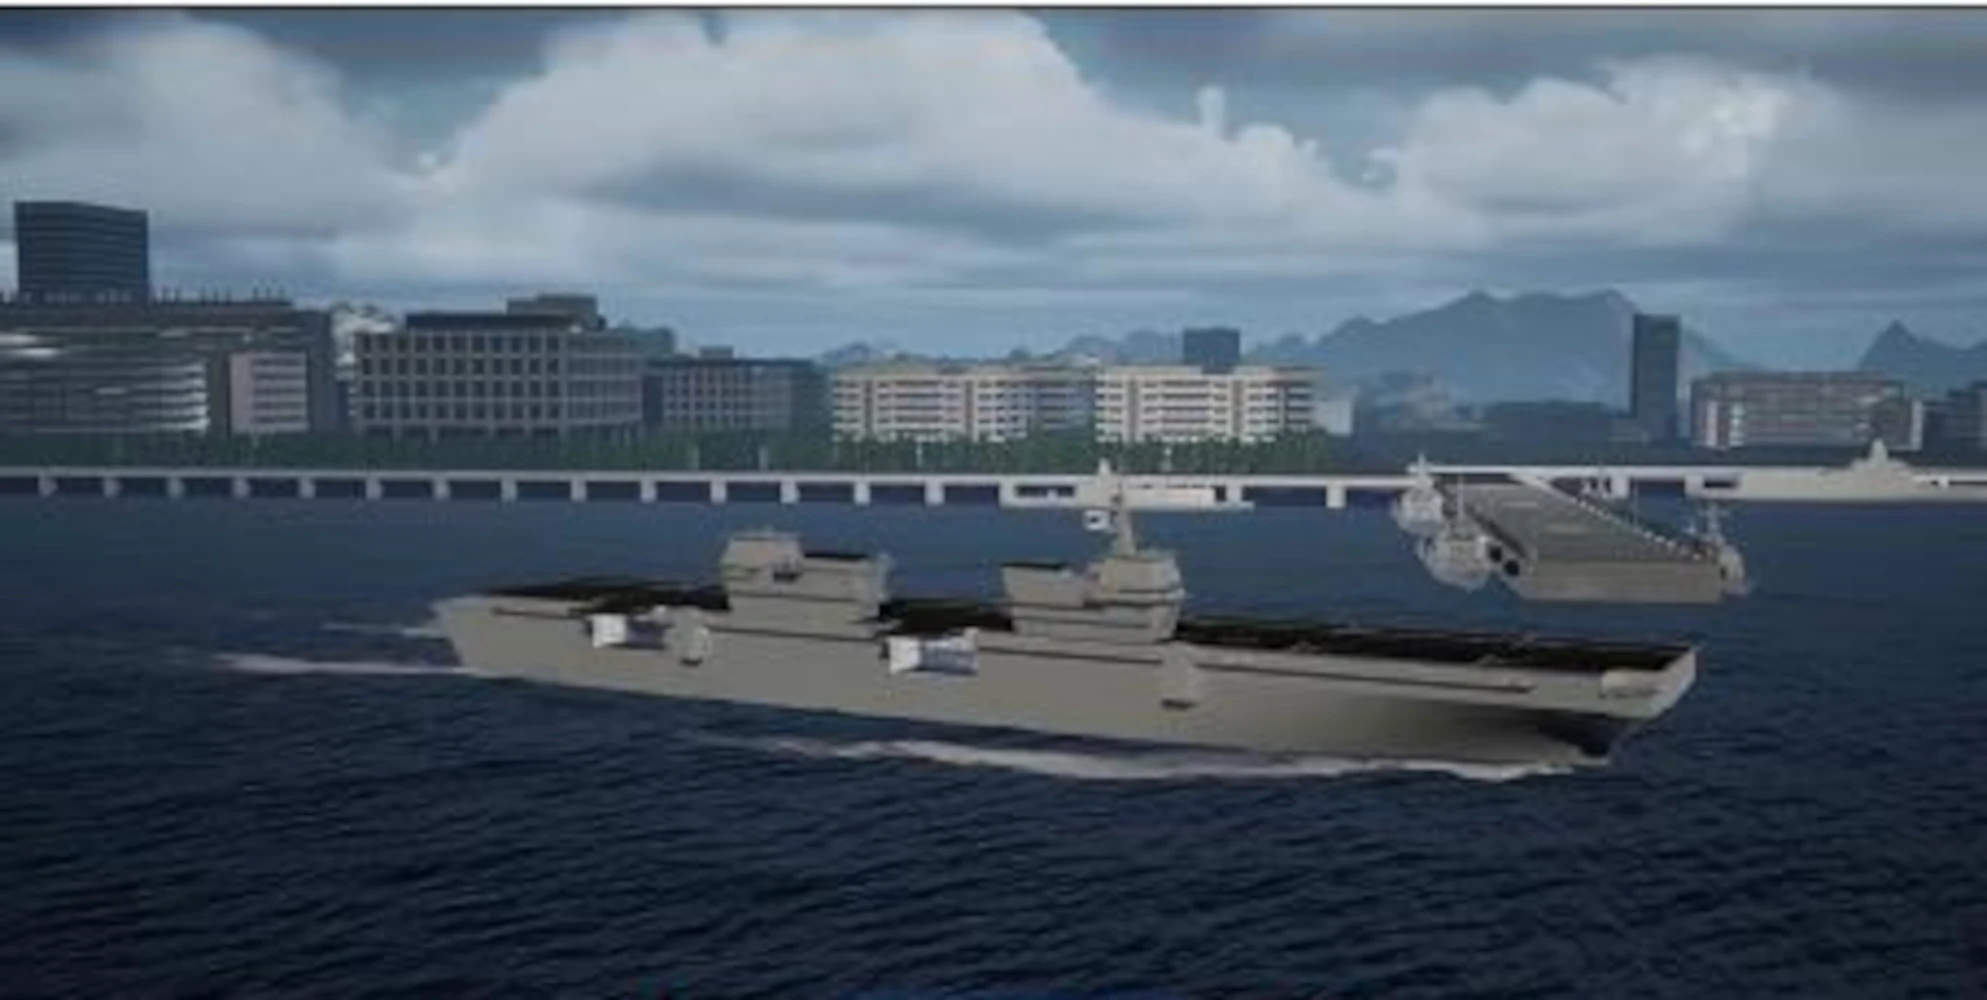 South Korea's first light aircraft carrier design